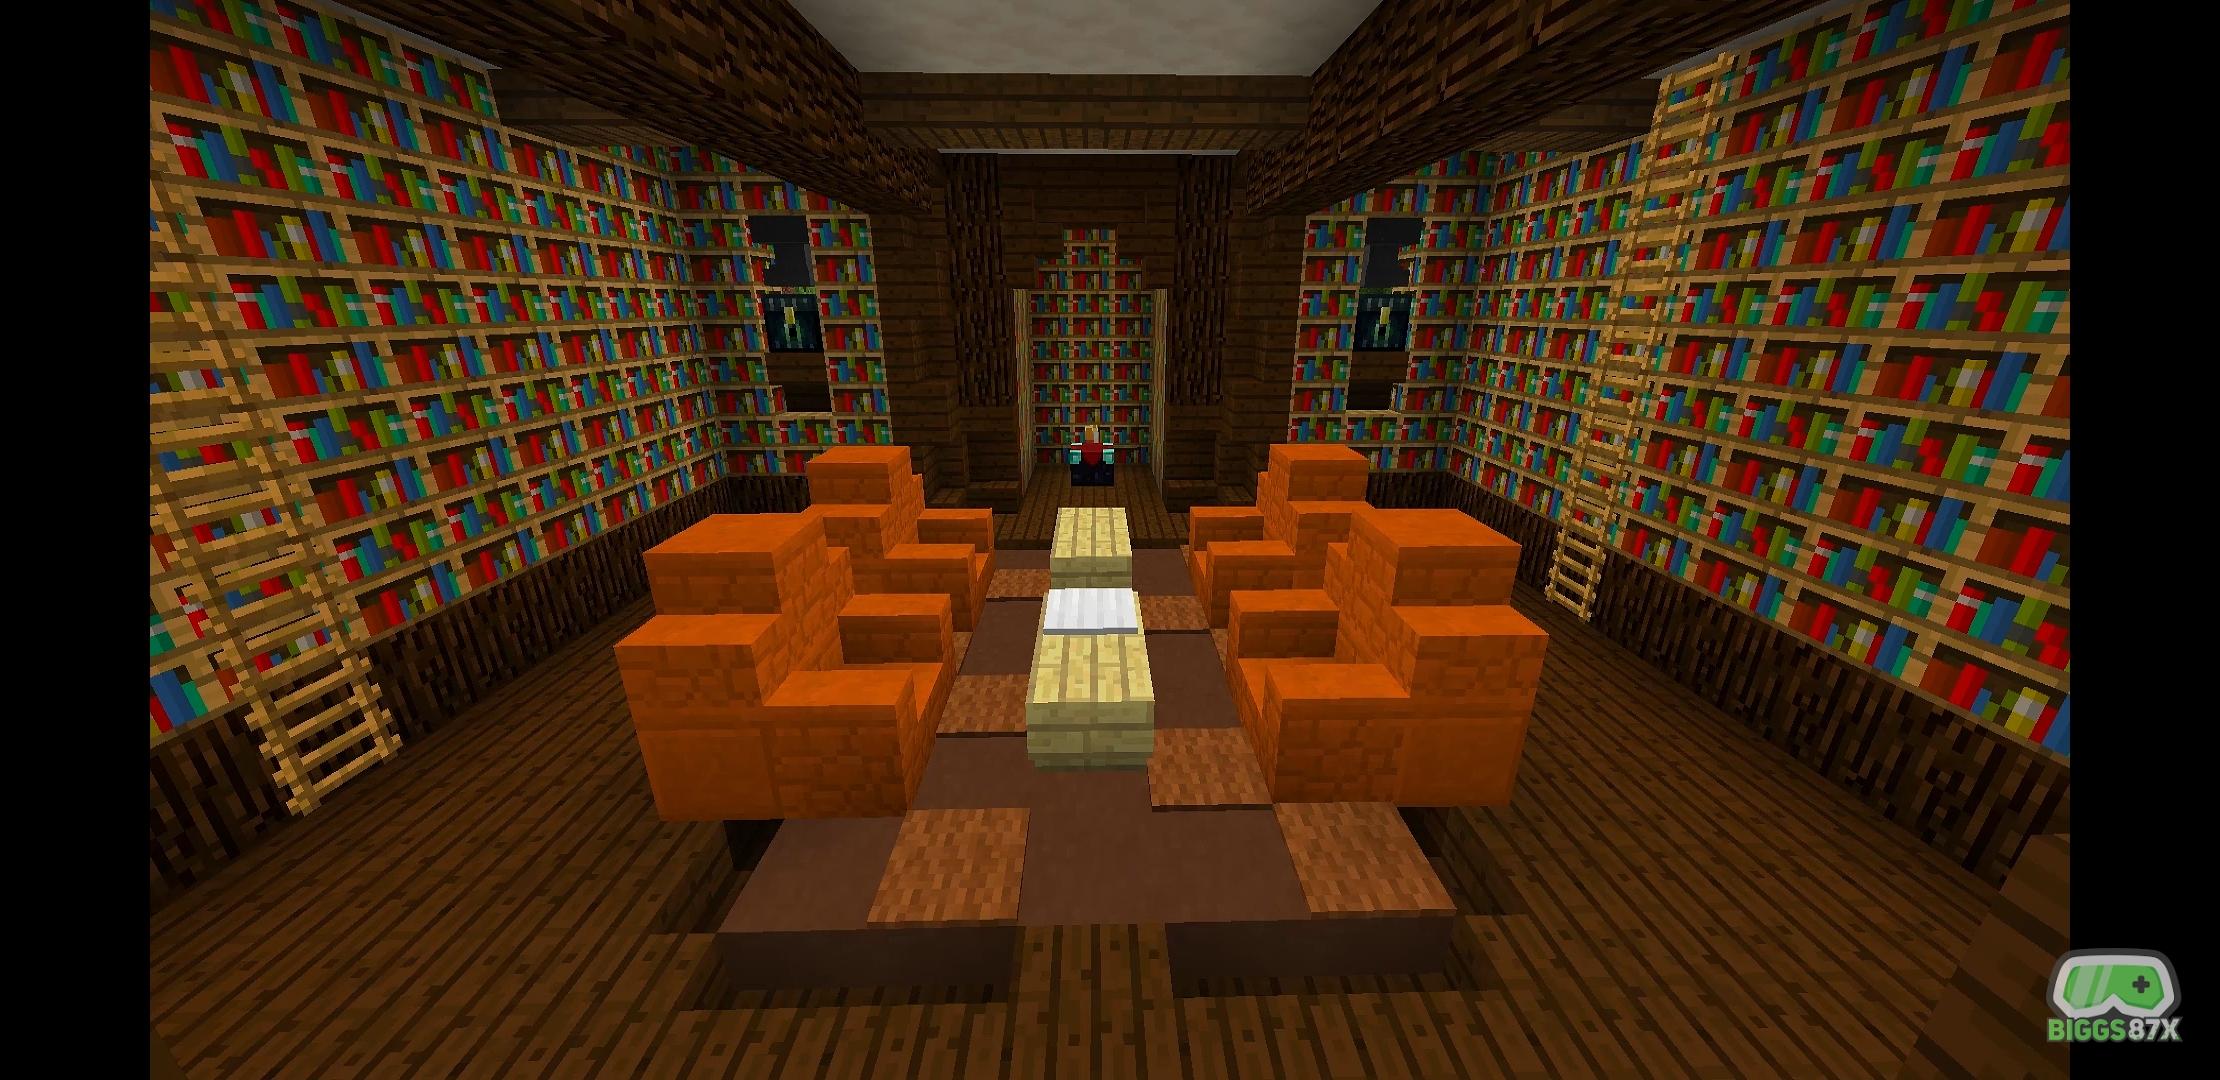 Minecraft Room Ideas